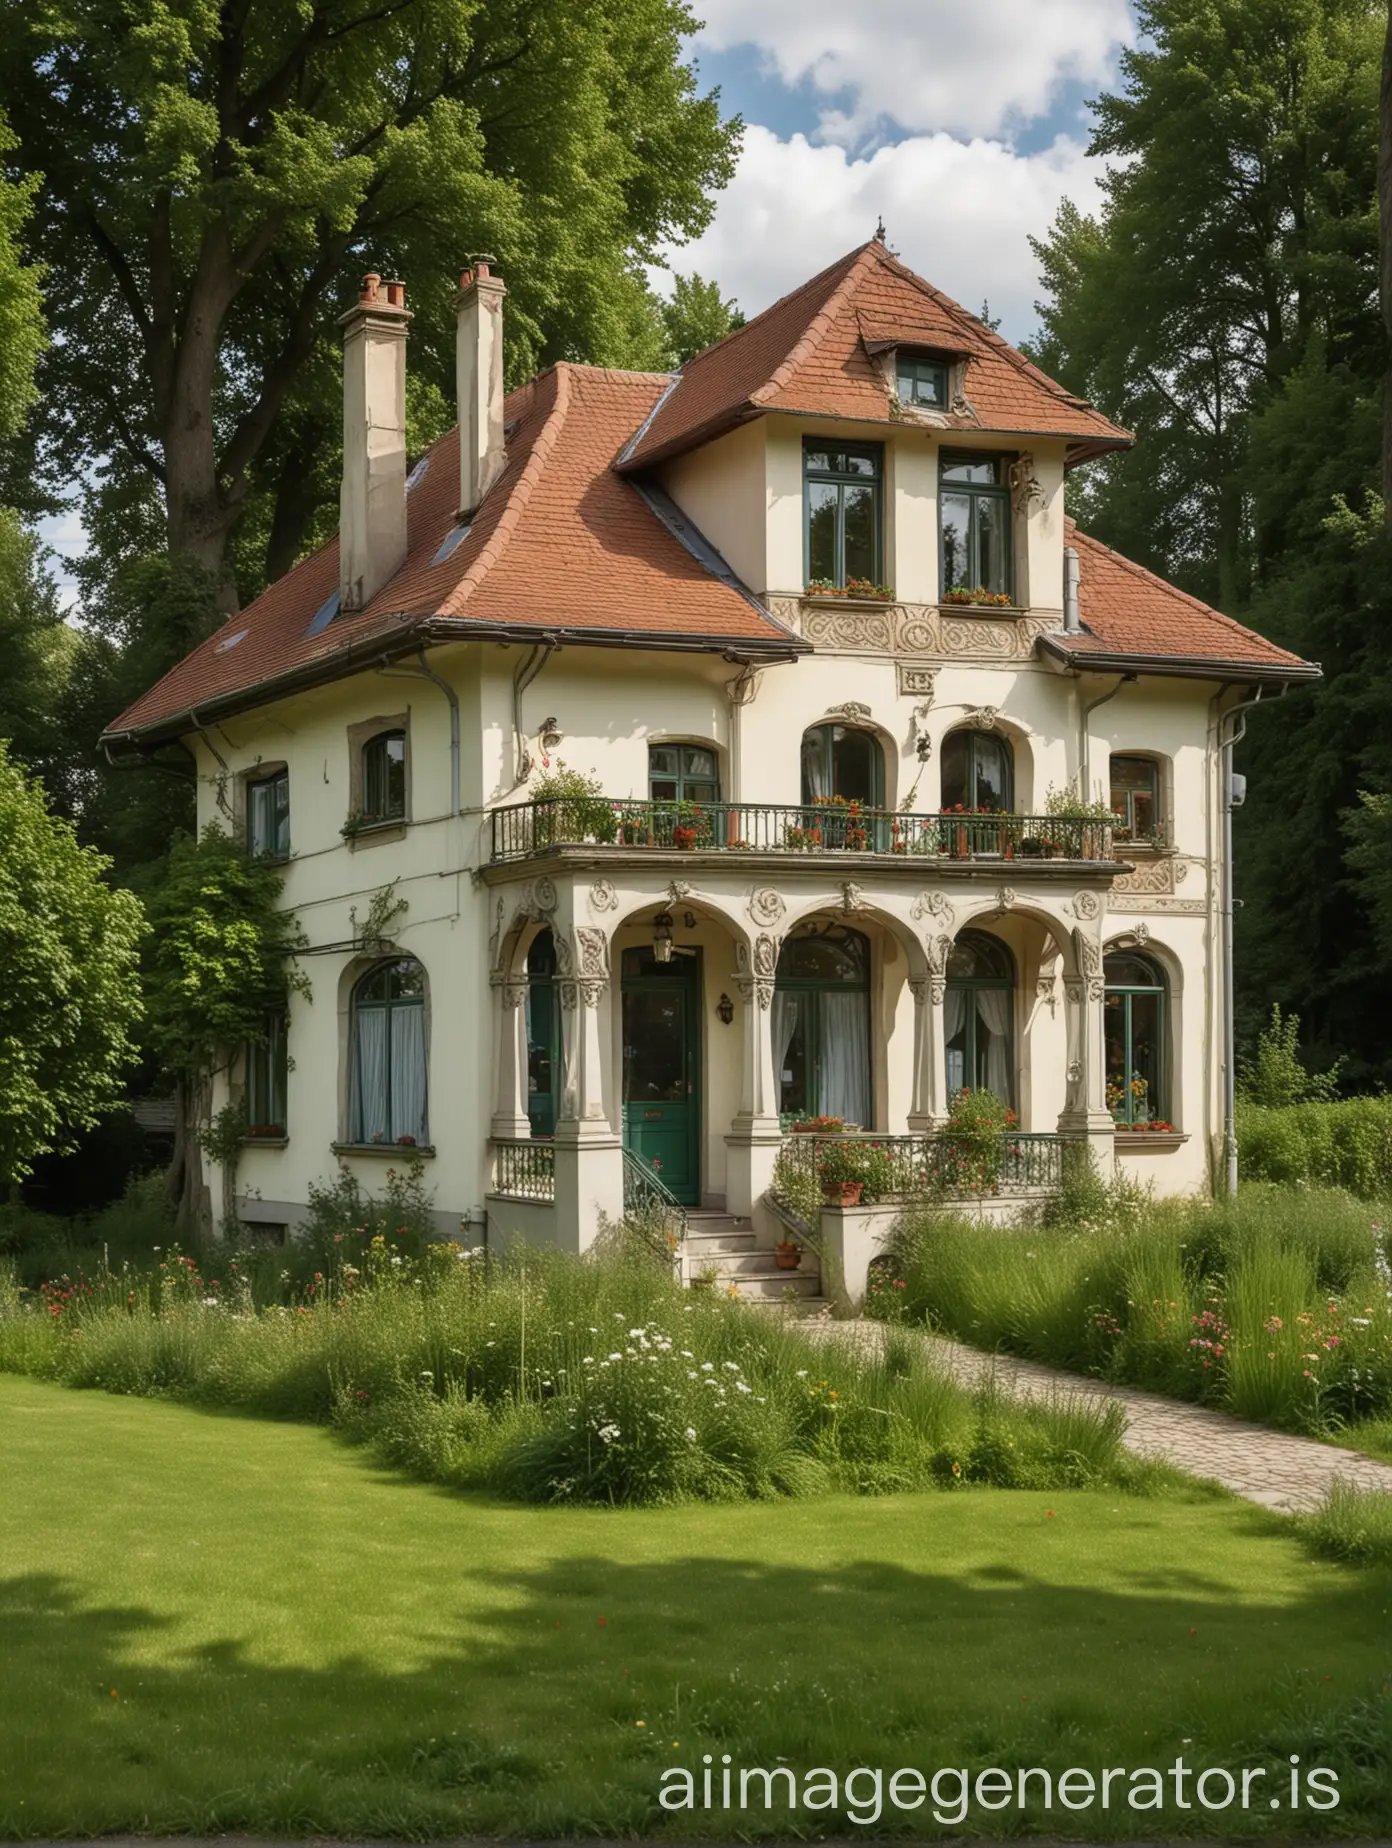 An Art Nouveau, rumah kecil yang nyaman, dengan dikelilingi persawahan